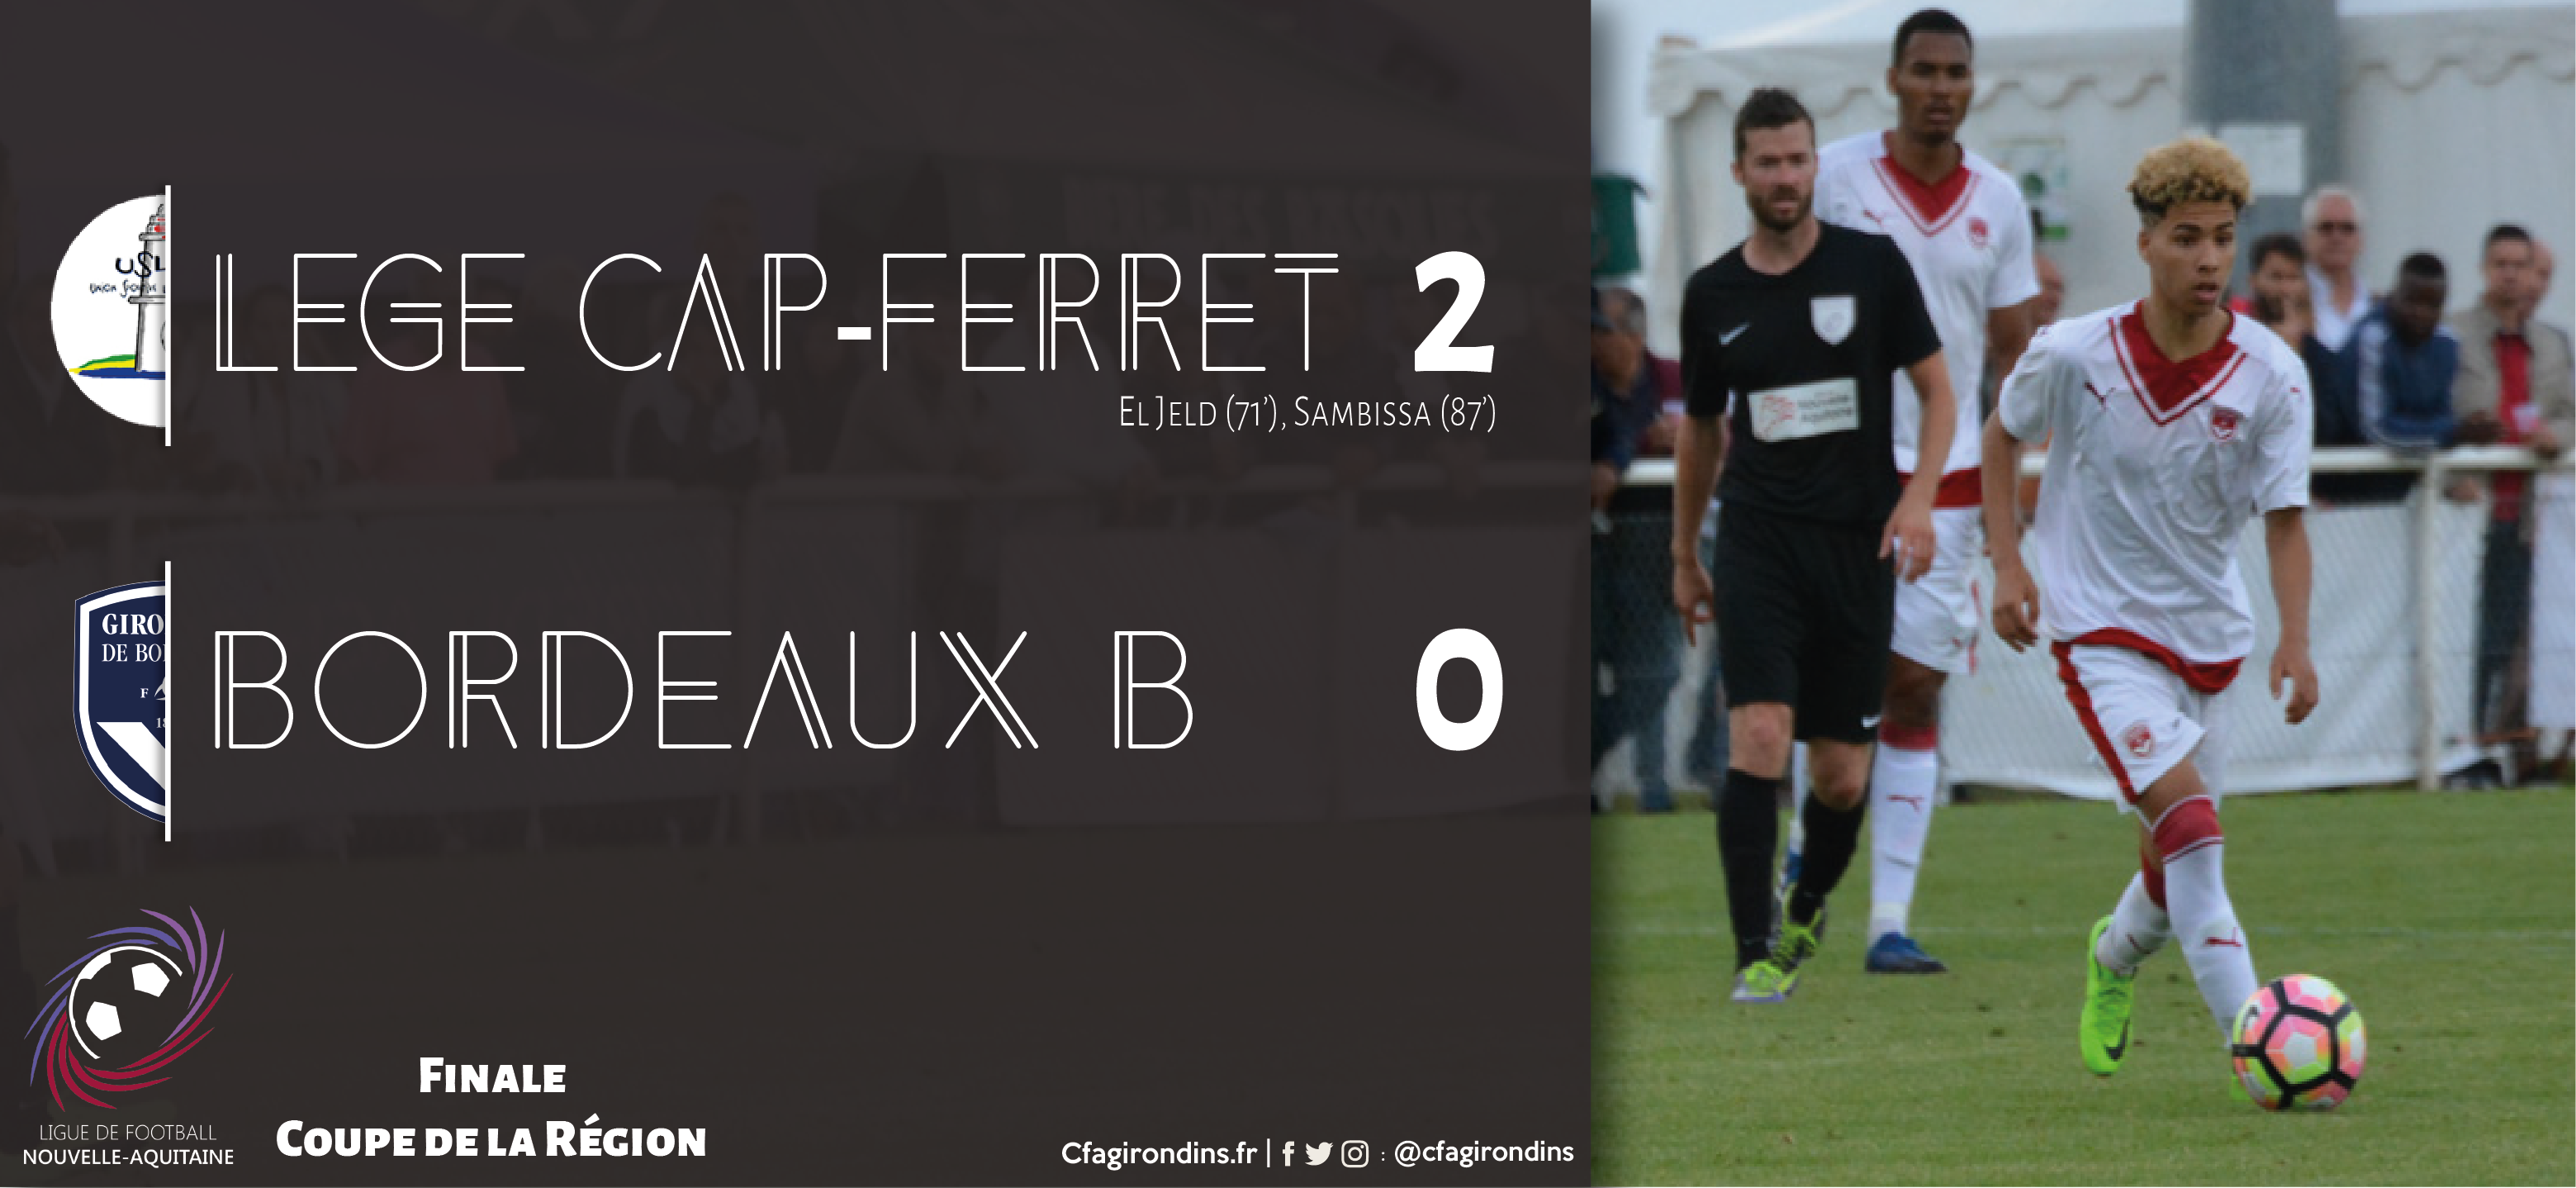 Coupe de la région Aquitaine : Retour sur la finale Lège Cap-Ferret - Bordeaux B (2-0)